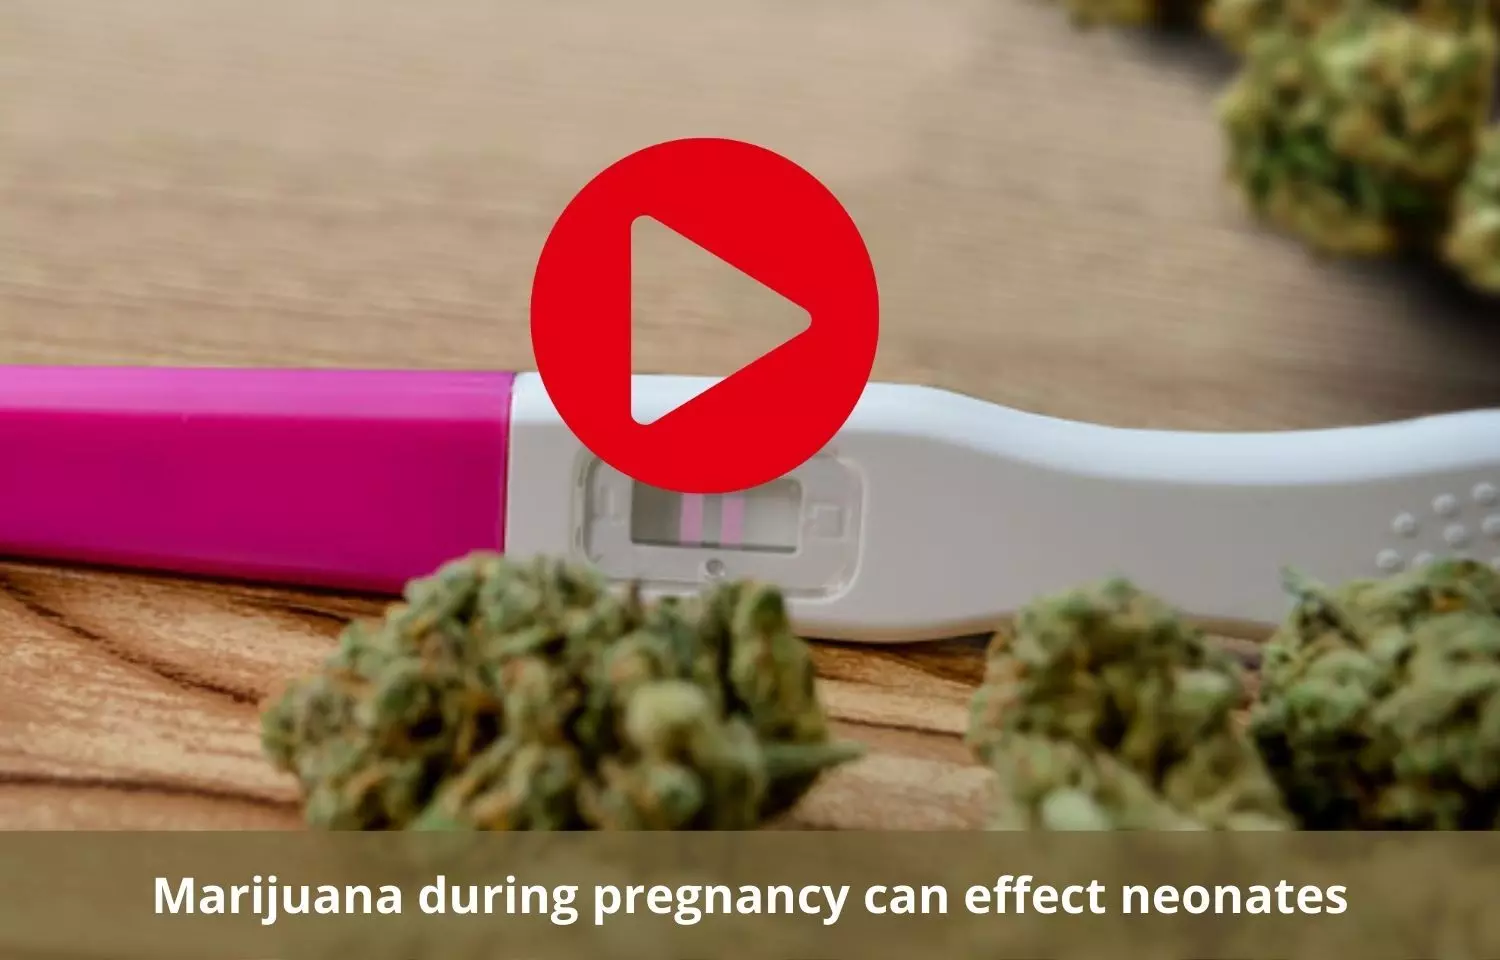 Marijuana exposure in pregnancy to effect neonatal development